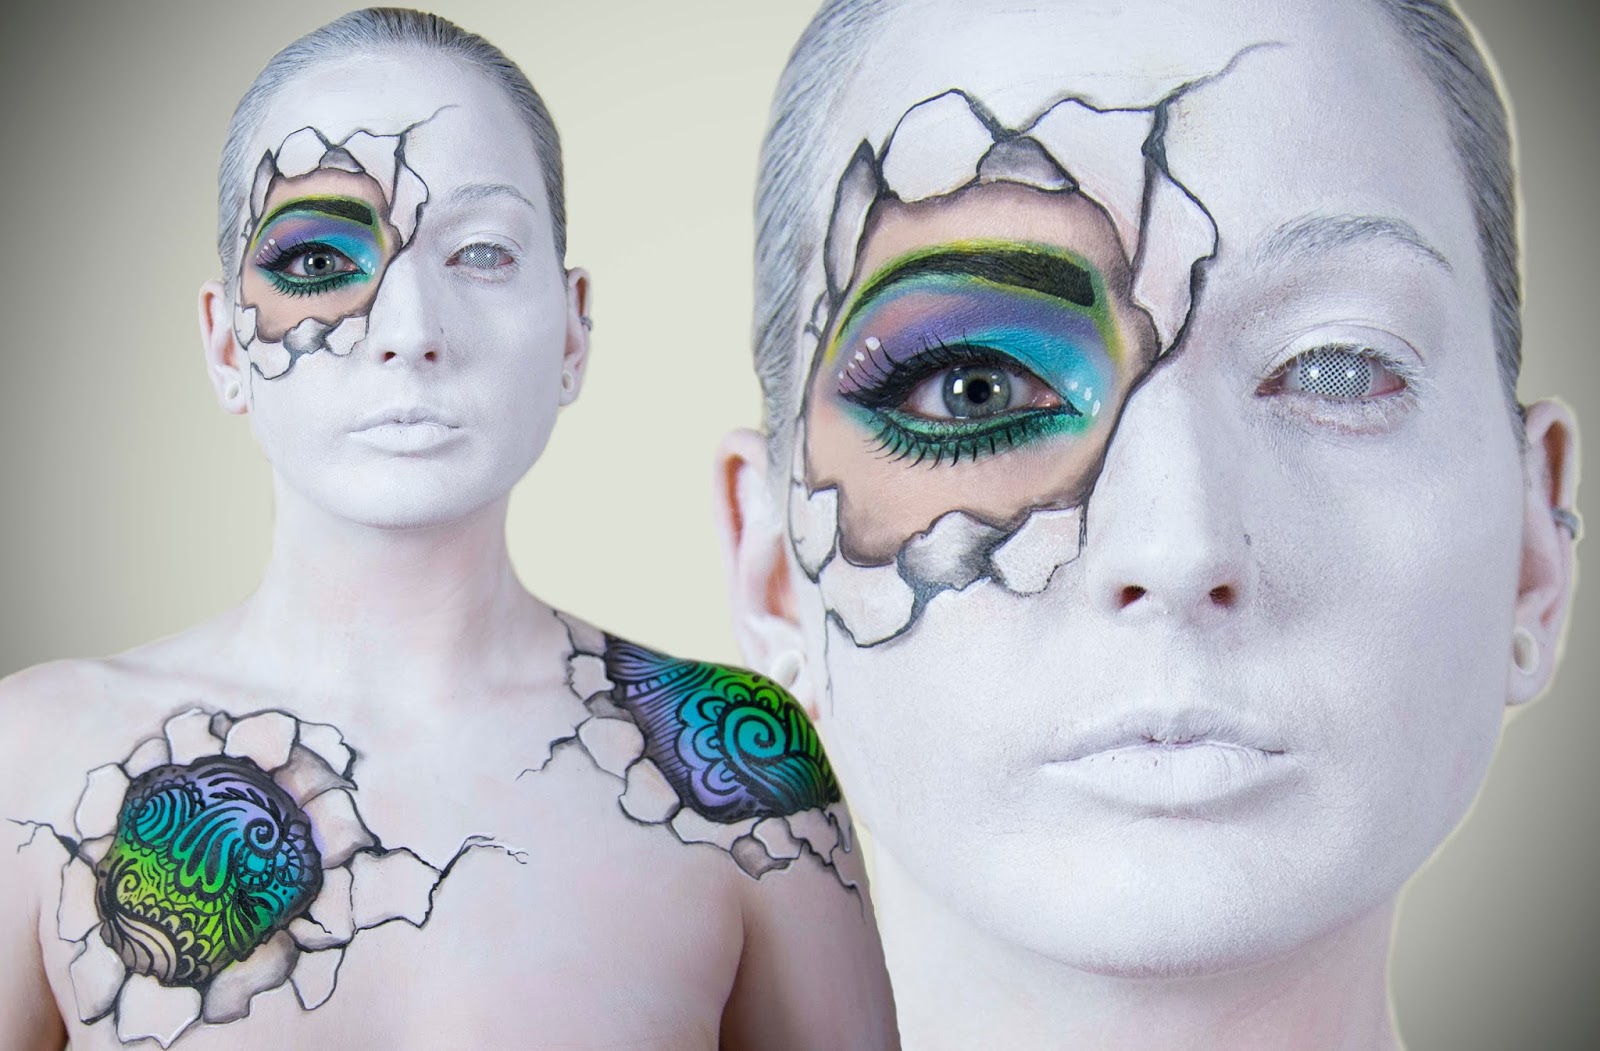 Νέο σεμινάριο επαγγελματικού μακιγιάζ: face painting & special effects από την Jennifer Ray στο εργαστήρι δημιουργικής γραφής Tabula Rasa - Φωτογραφία 1